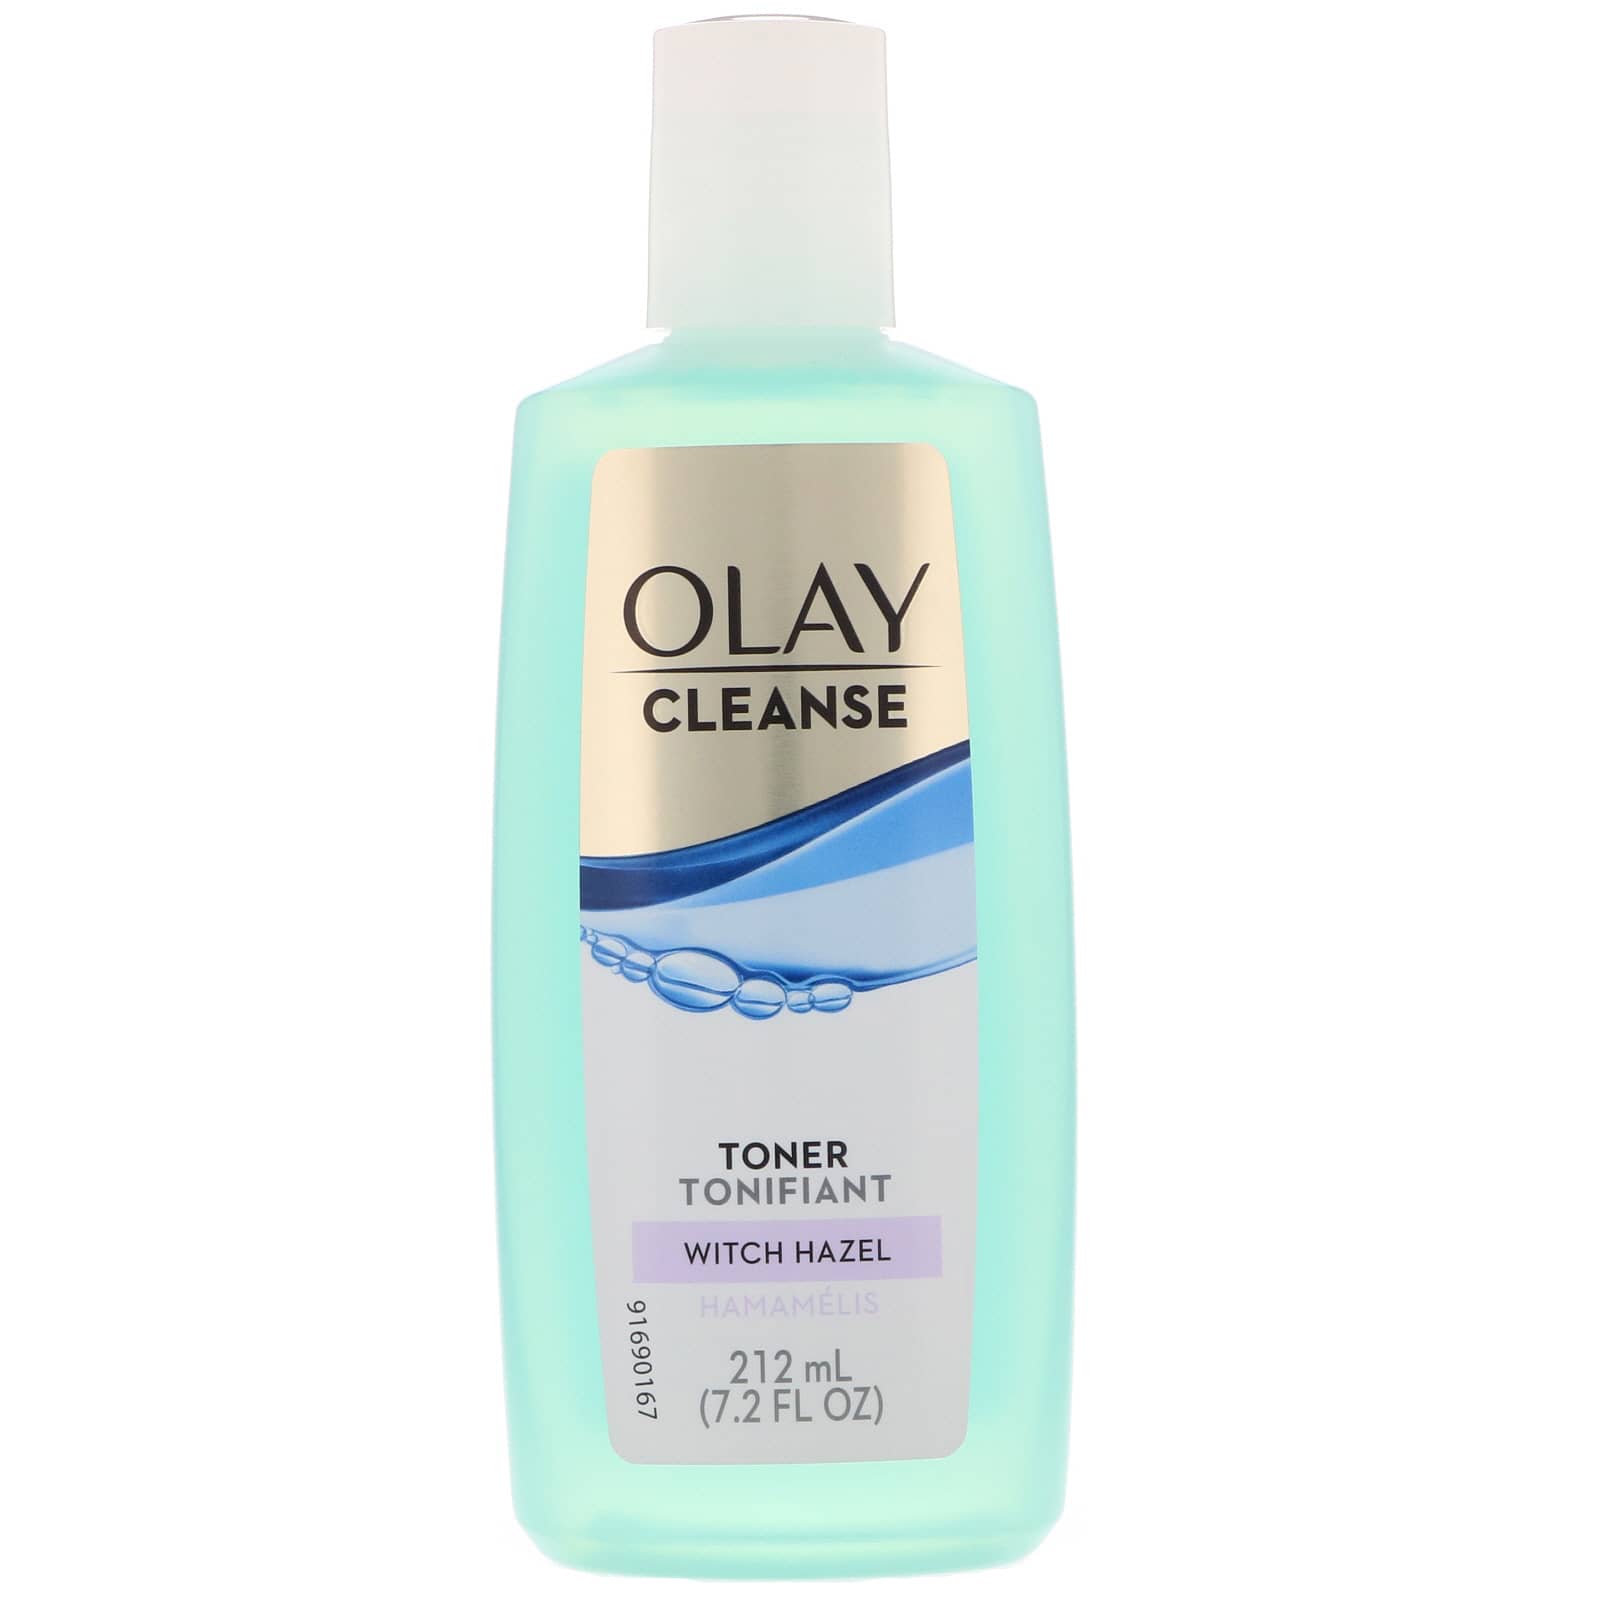 Olay, Cleanse Toner (212 ml)